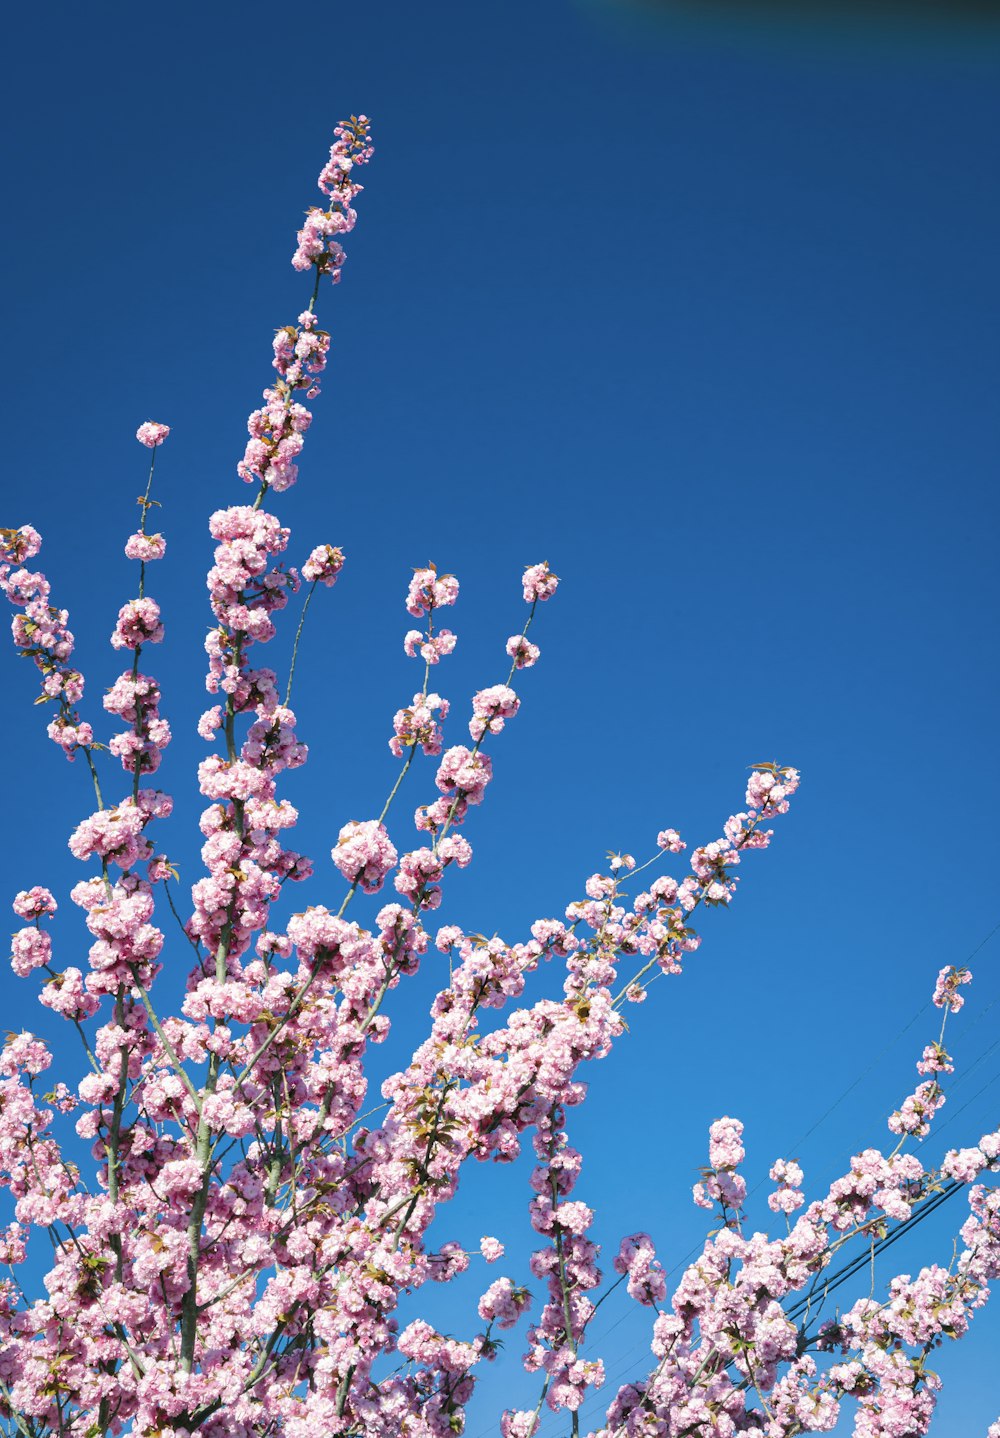 Bốn mùa qua đi, nhưng hoa trắng và hồng vẫn luôn làm cho mùa xuân thêm rực rỡ và tươi sáng. Tại sao bạn không đến với chúng tôi để tải về miễn phí các hình ảnh hoa trắng và hồng trên nền bầu trời xanh đẹp như tranh vẽ để làm hình nền cho điện thoại của mình?